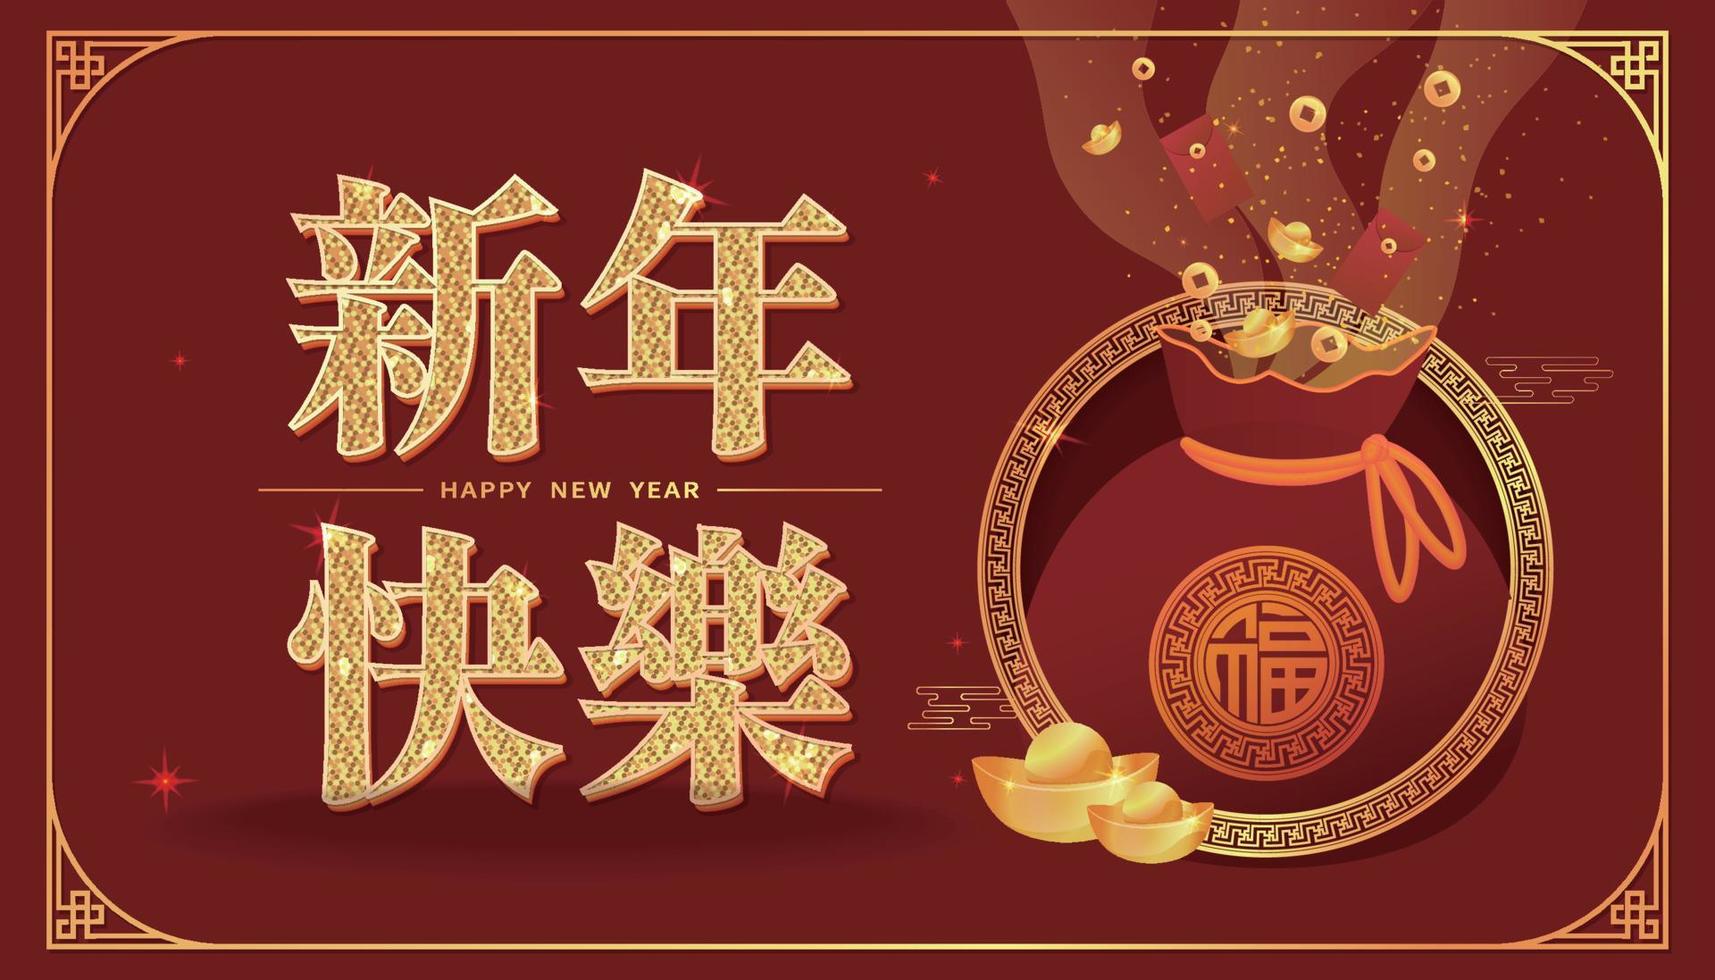 tarjeta de felicitación de feliz año nuevo con palabras en chino e inglés feliz año nuevo y bolsa de la suerte, lingote, sobre rojo vector